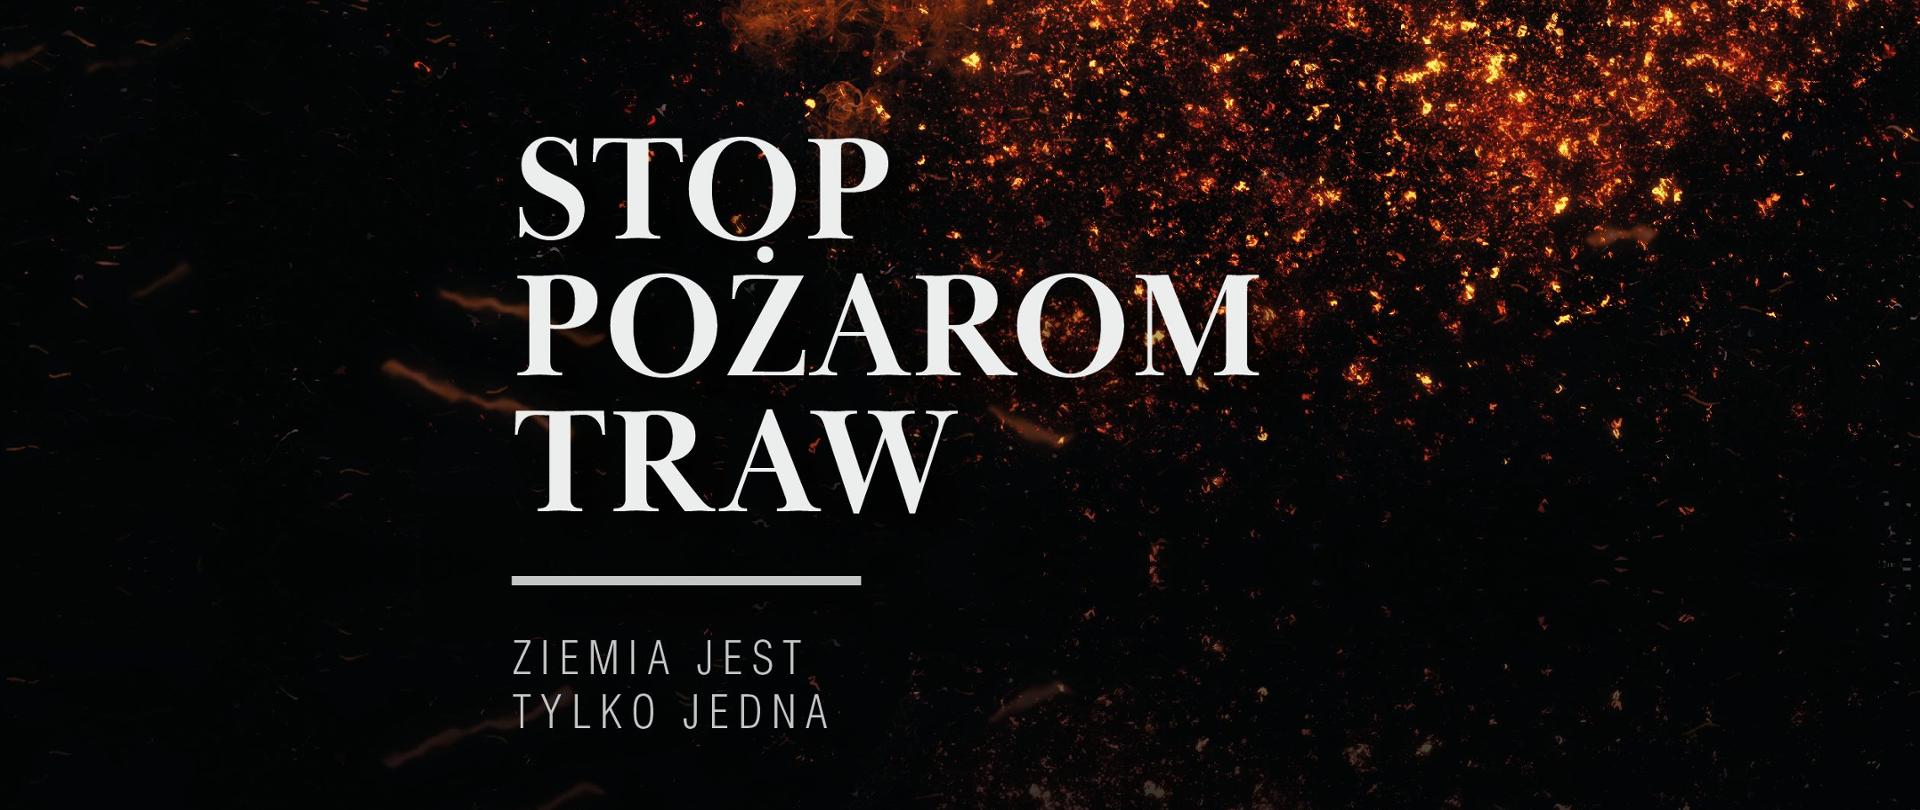 Zdjęcie przedstawia plakat promujący akcję STOP POŻAROM TRAW.